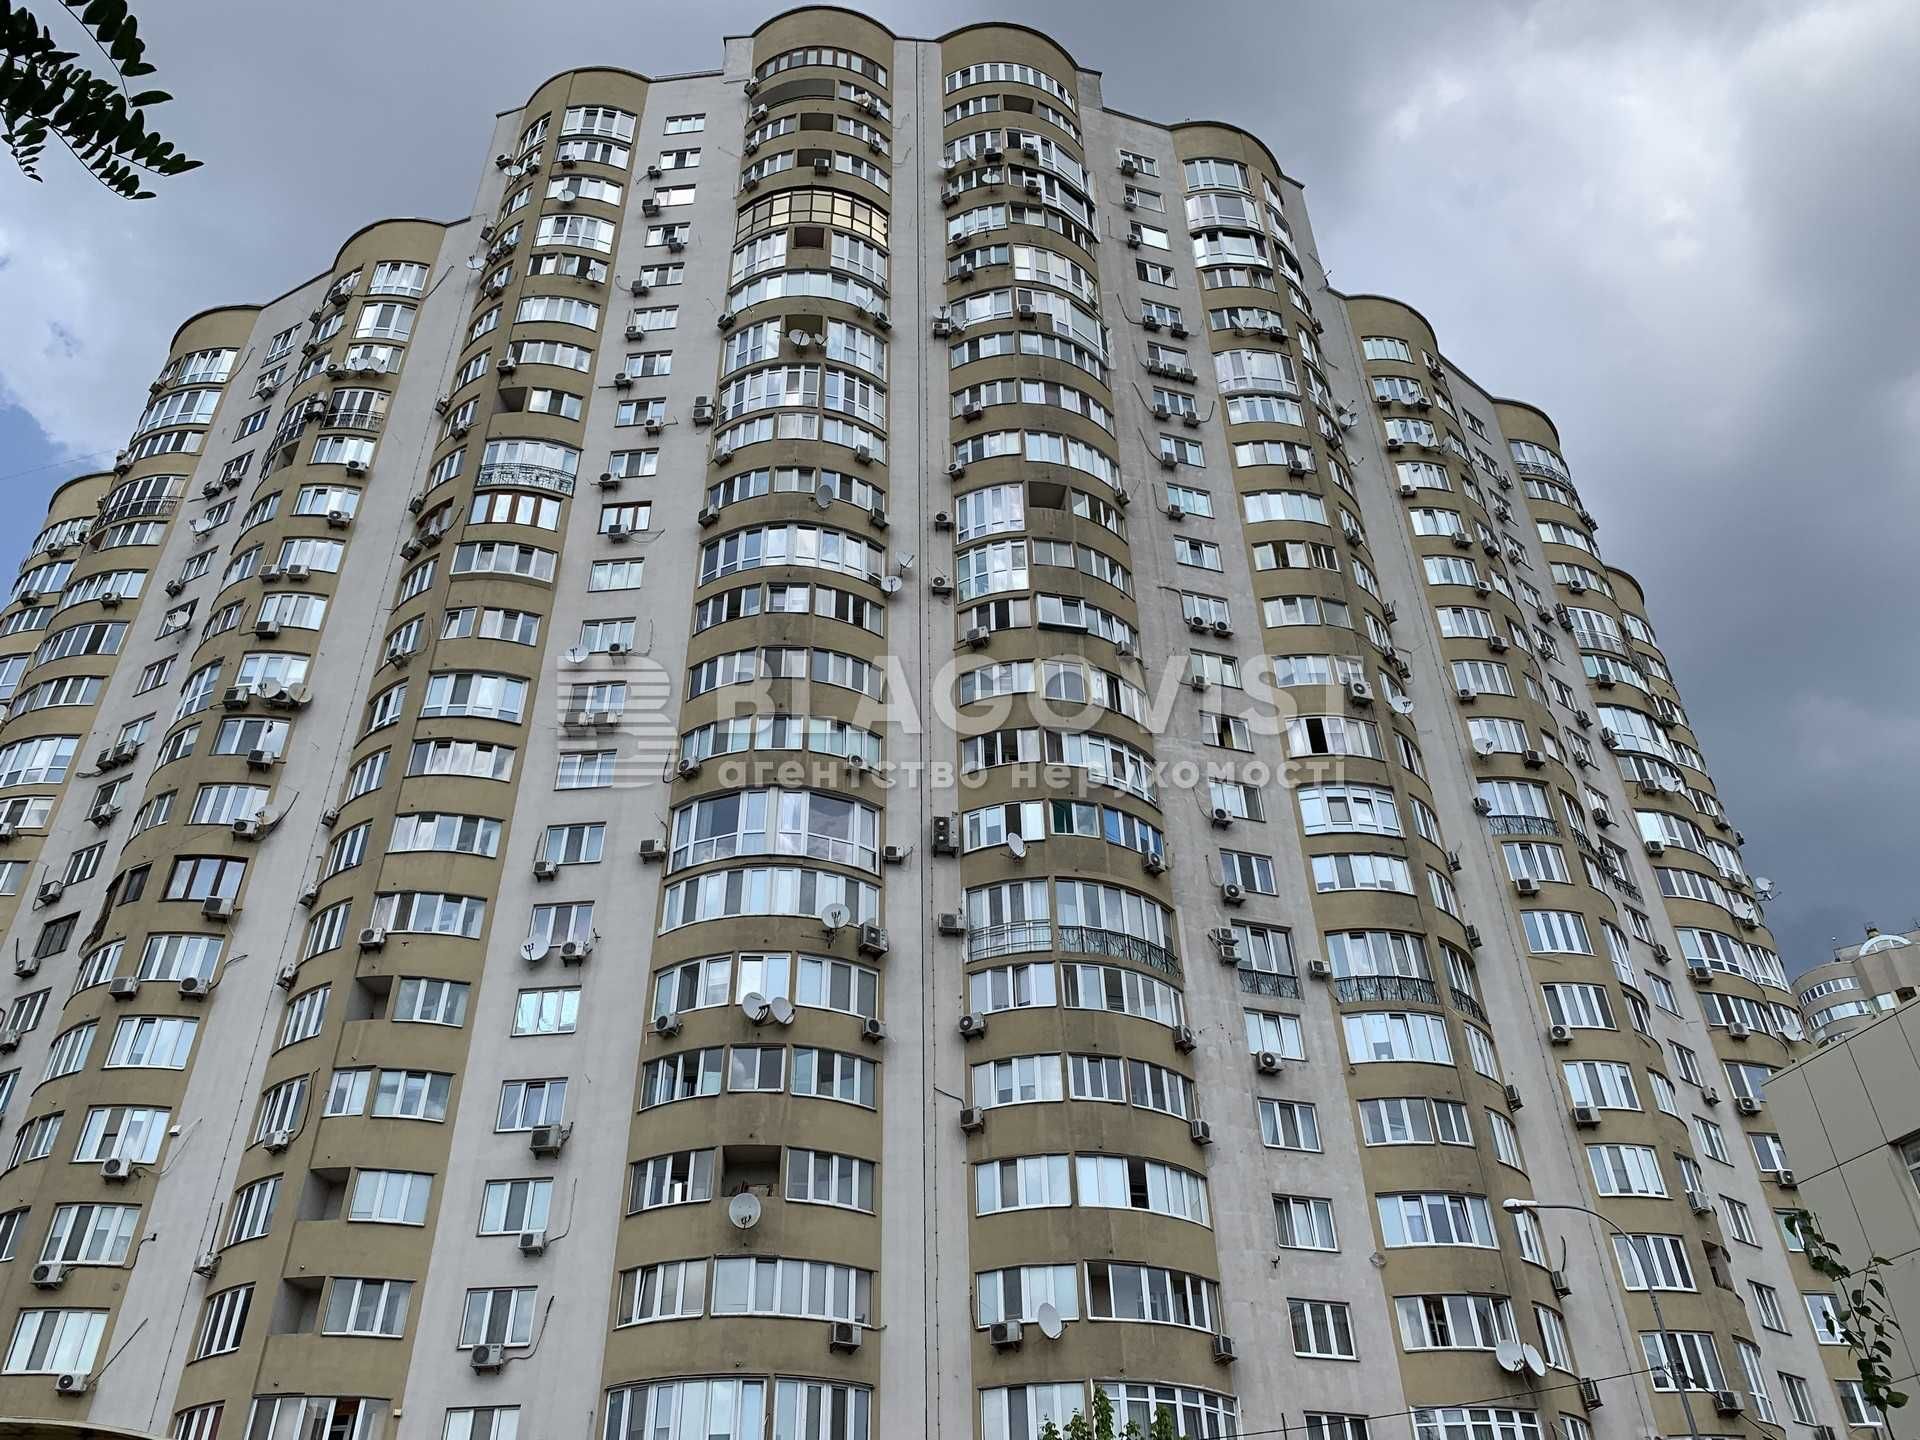 Дніпровська наб-на продаж квартири з ремонтом на невисокому поверсі!